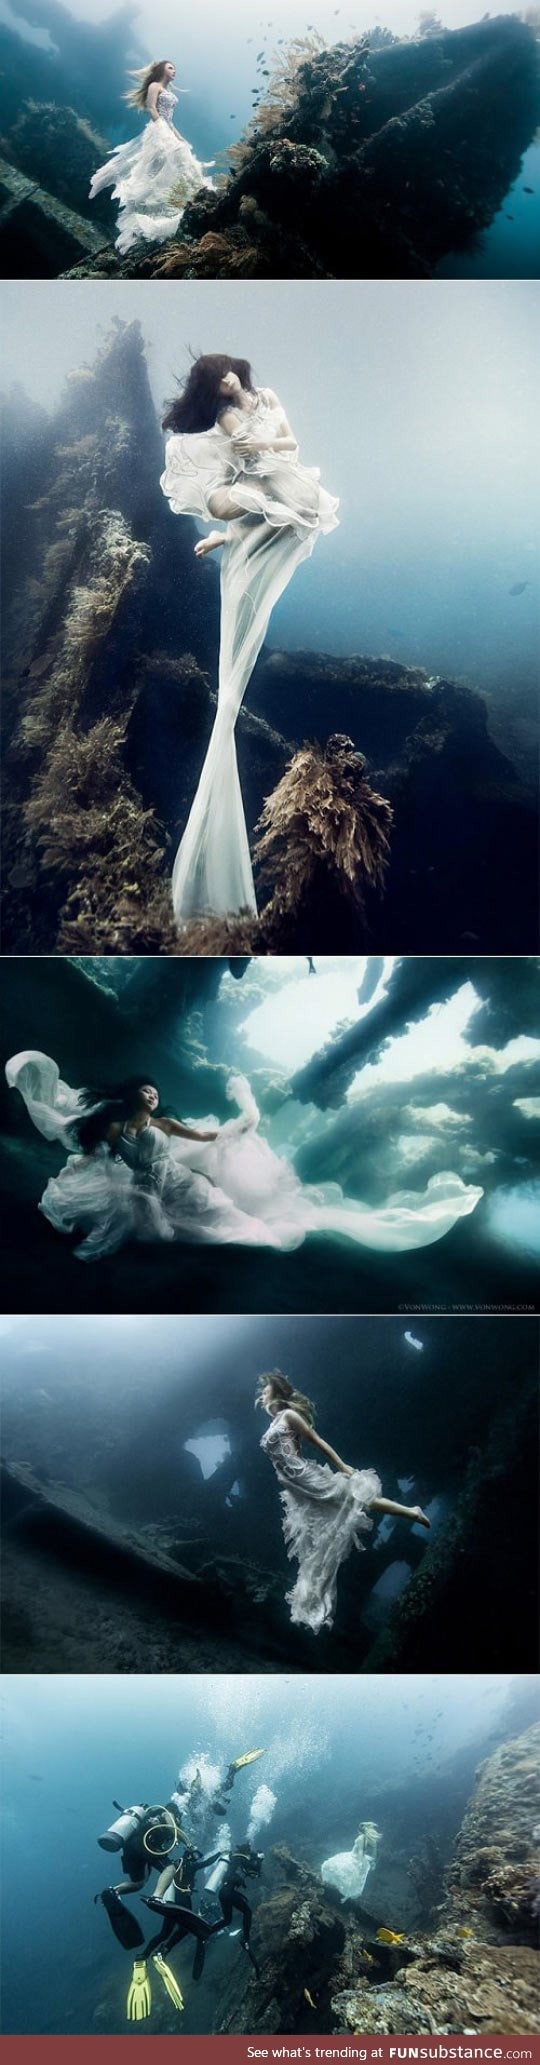 Underwater photoshoot, bali